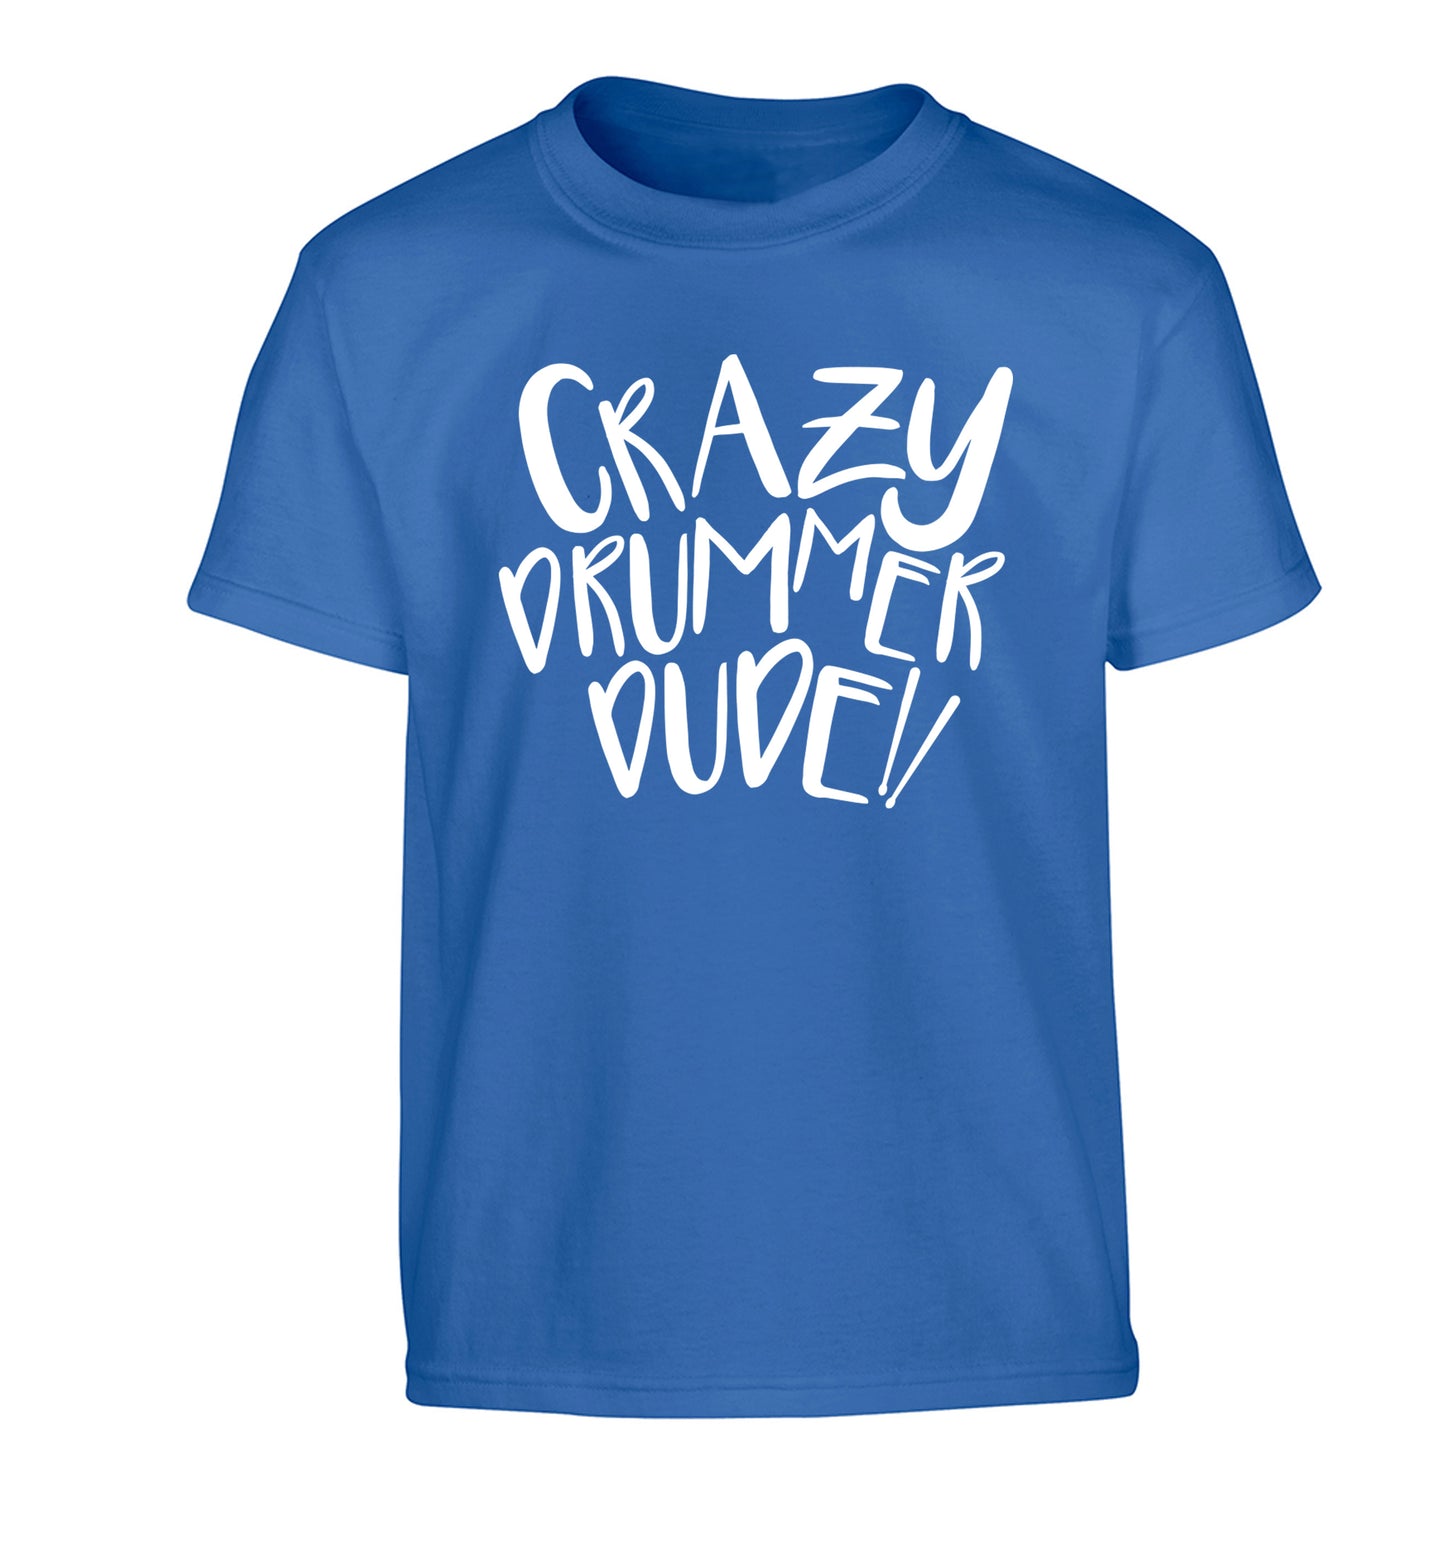 Crazy drummer dude Children's blue Tshirt 12-14 Years